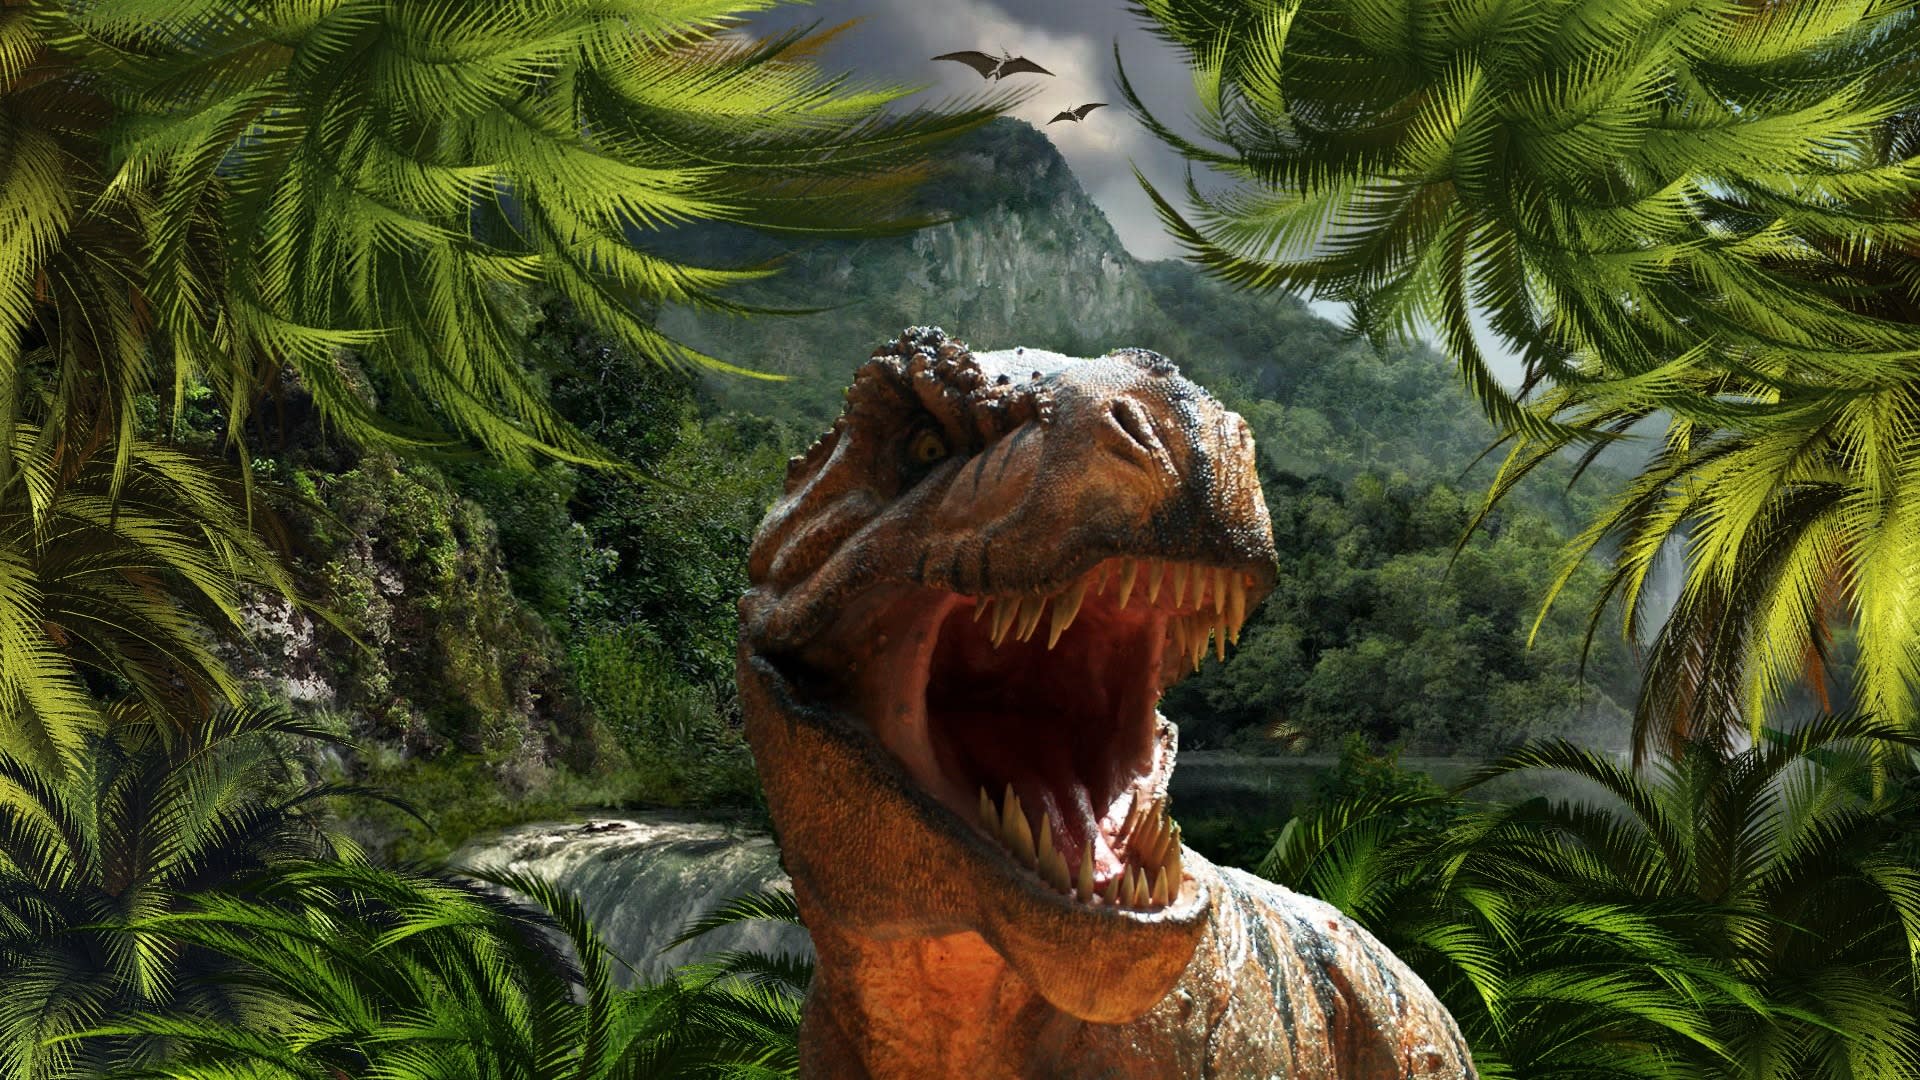 Masožravého dinosaura prozradí zuby